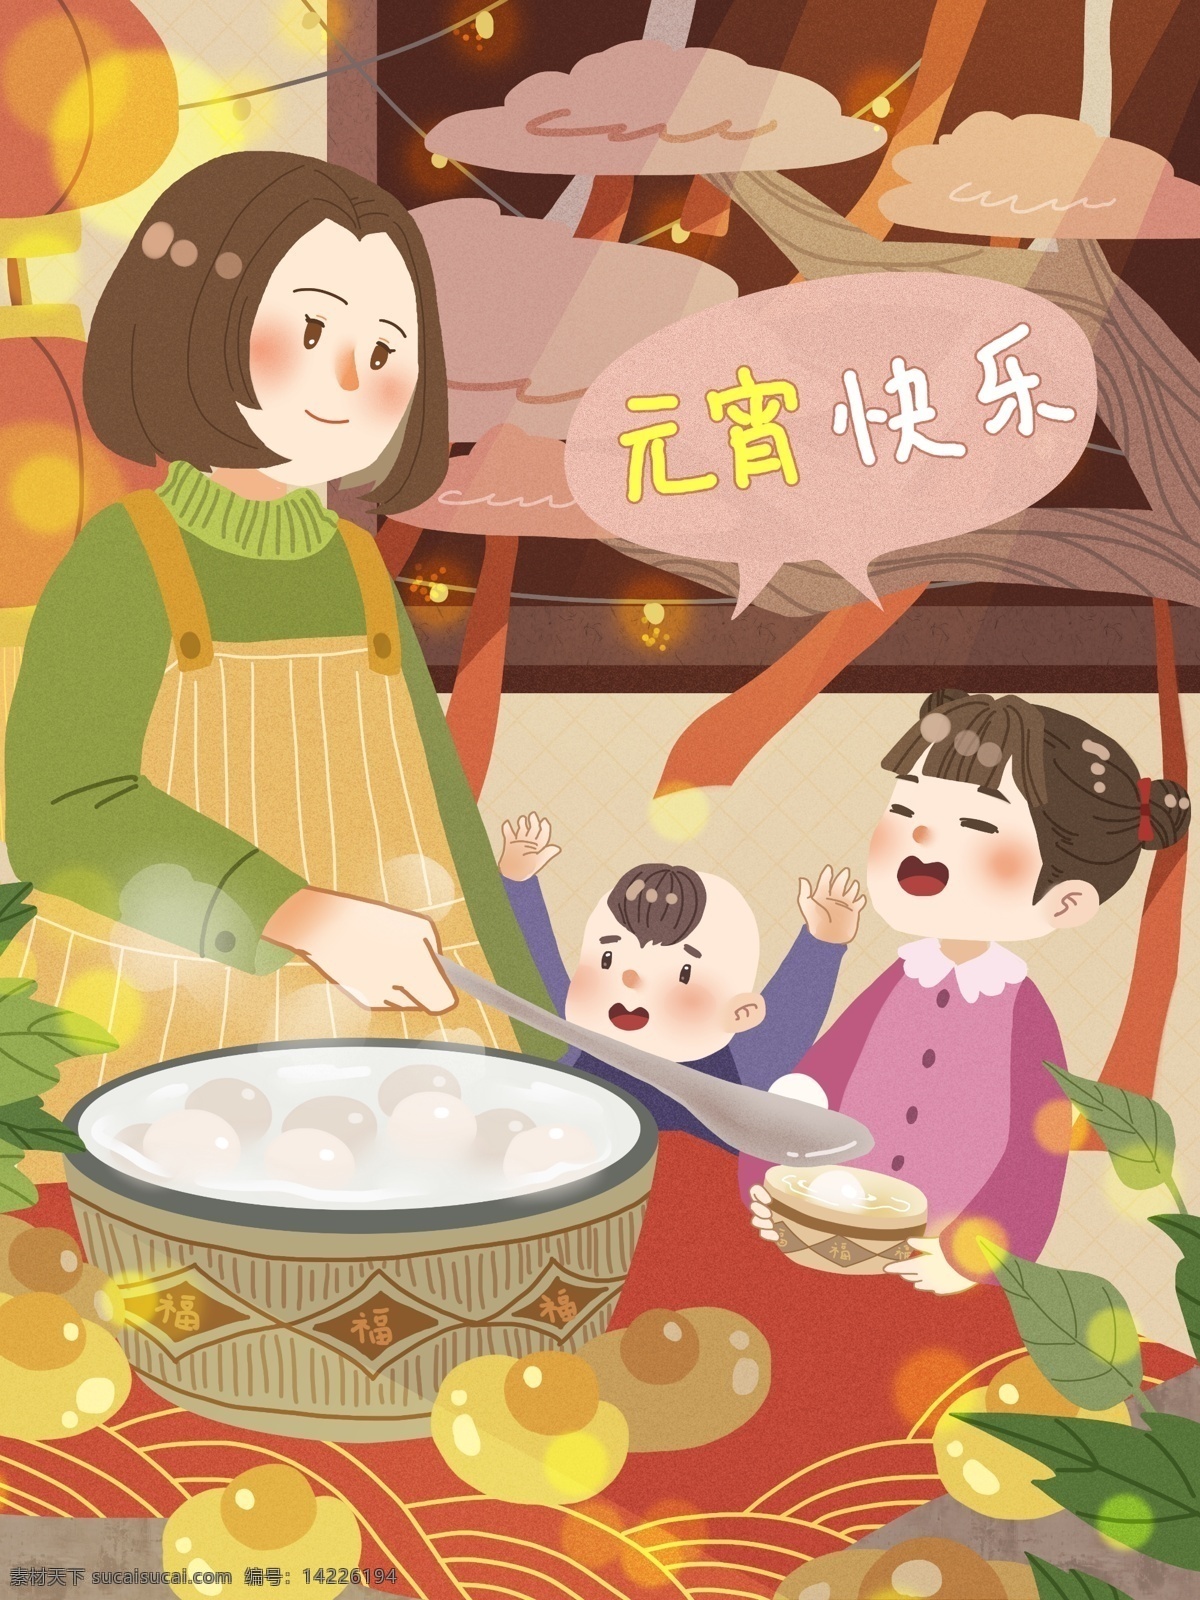 元宵 快乐 妈妈 煮 汤圆 妹妹 弟弟 欢乐 一家人 节日 元宝 灯笼 小孩 园子 气氛 树 开心